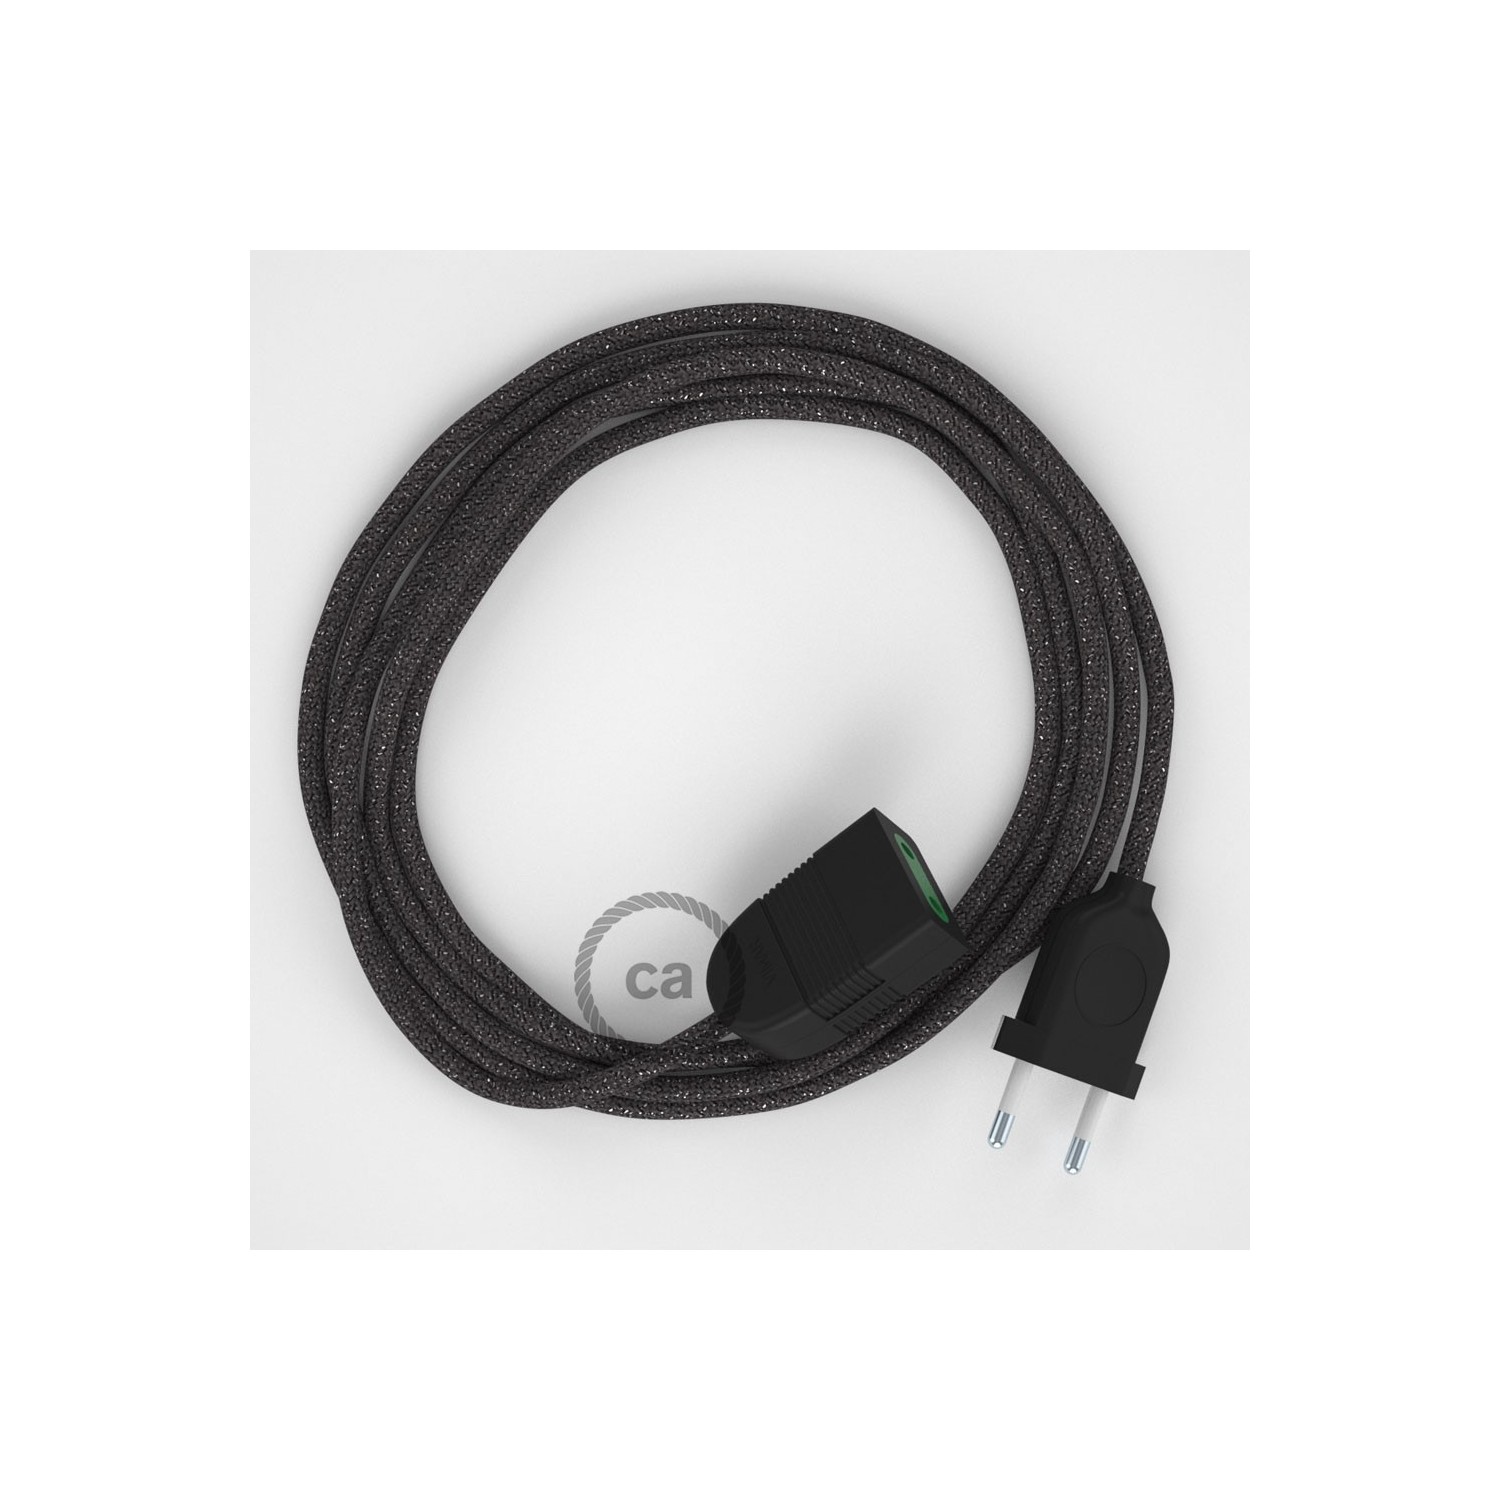 Rallonge électrique avec câble textile RL03 Effet Soie Paillettes Gris 2P 10A Made in Italy.